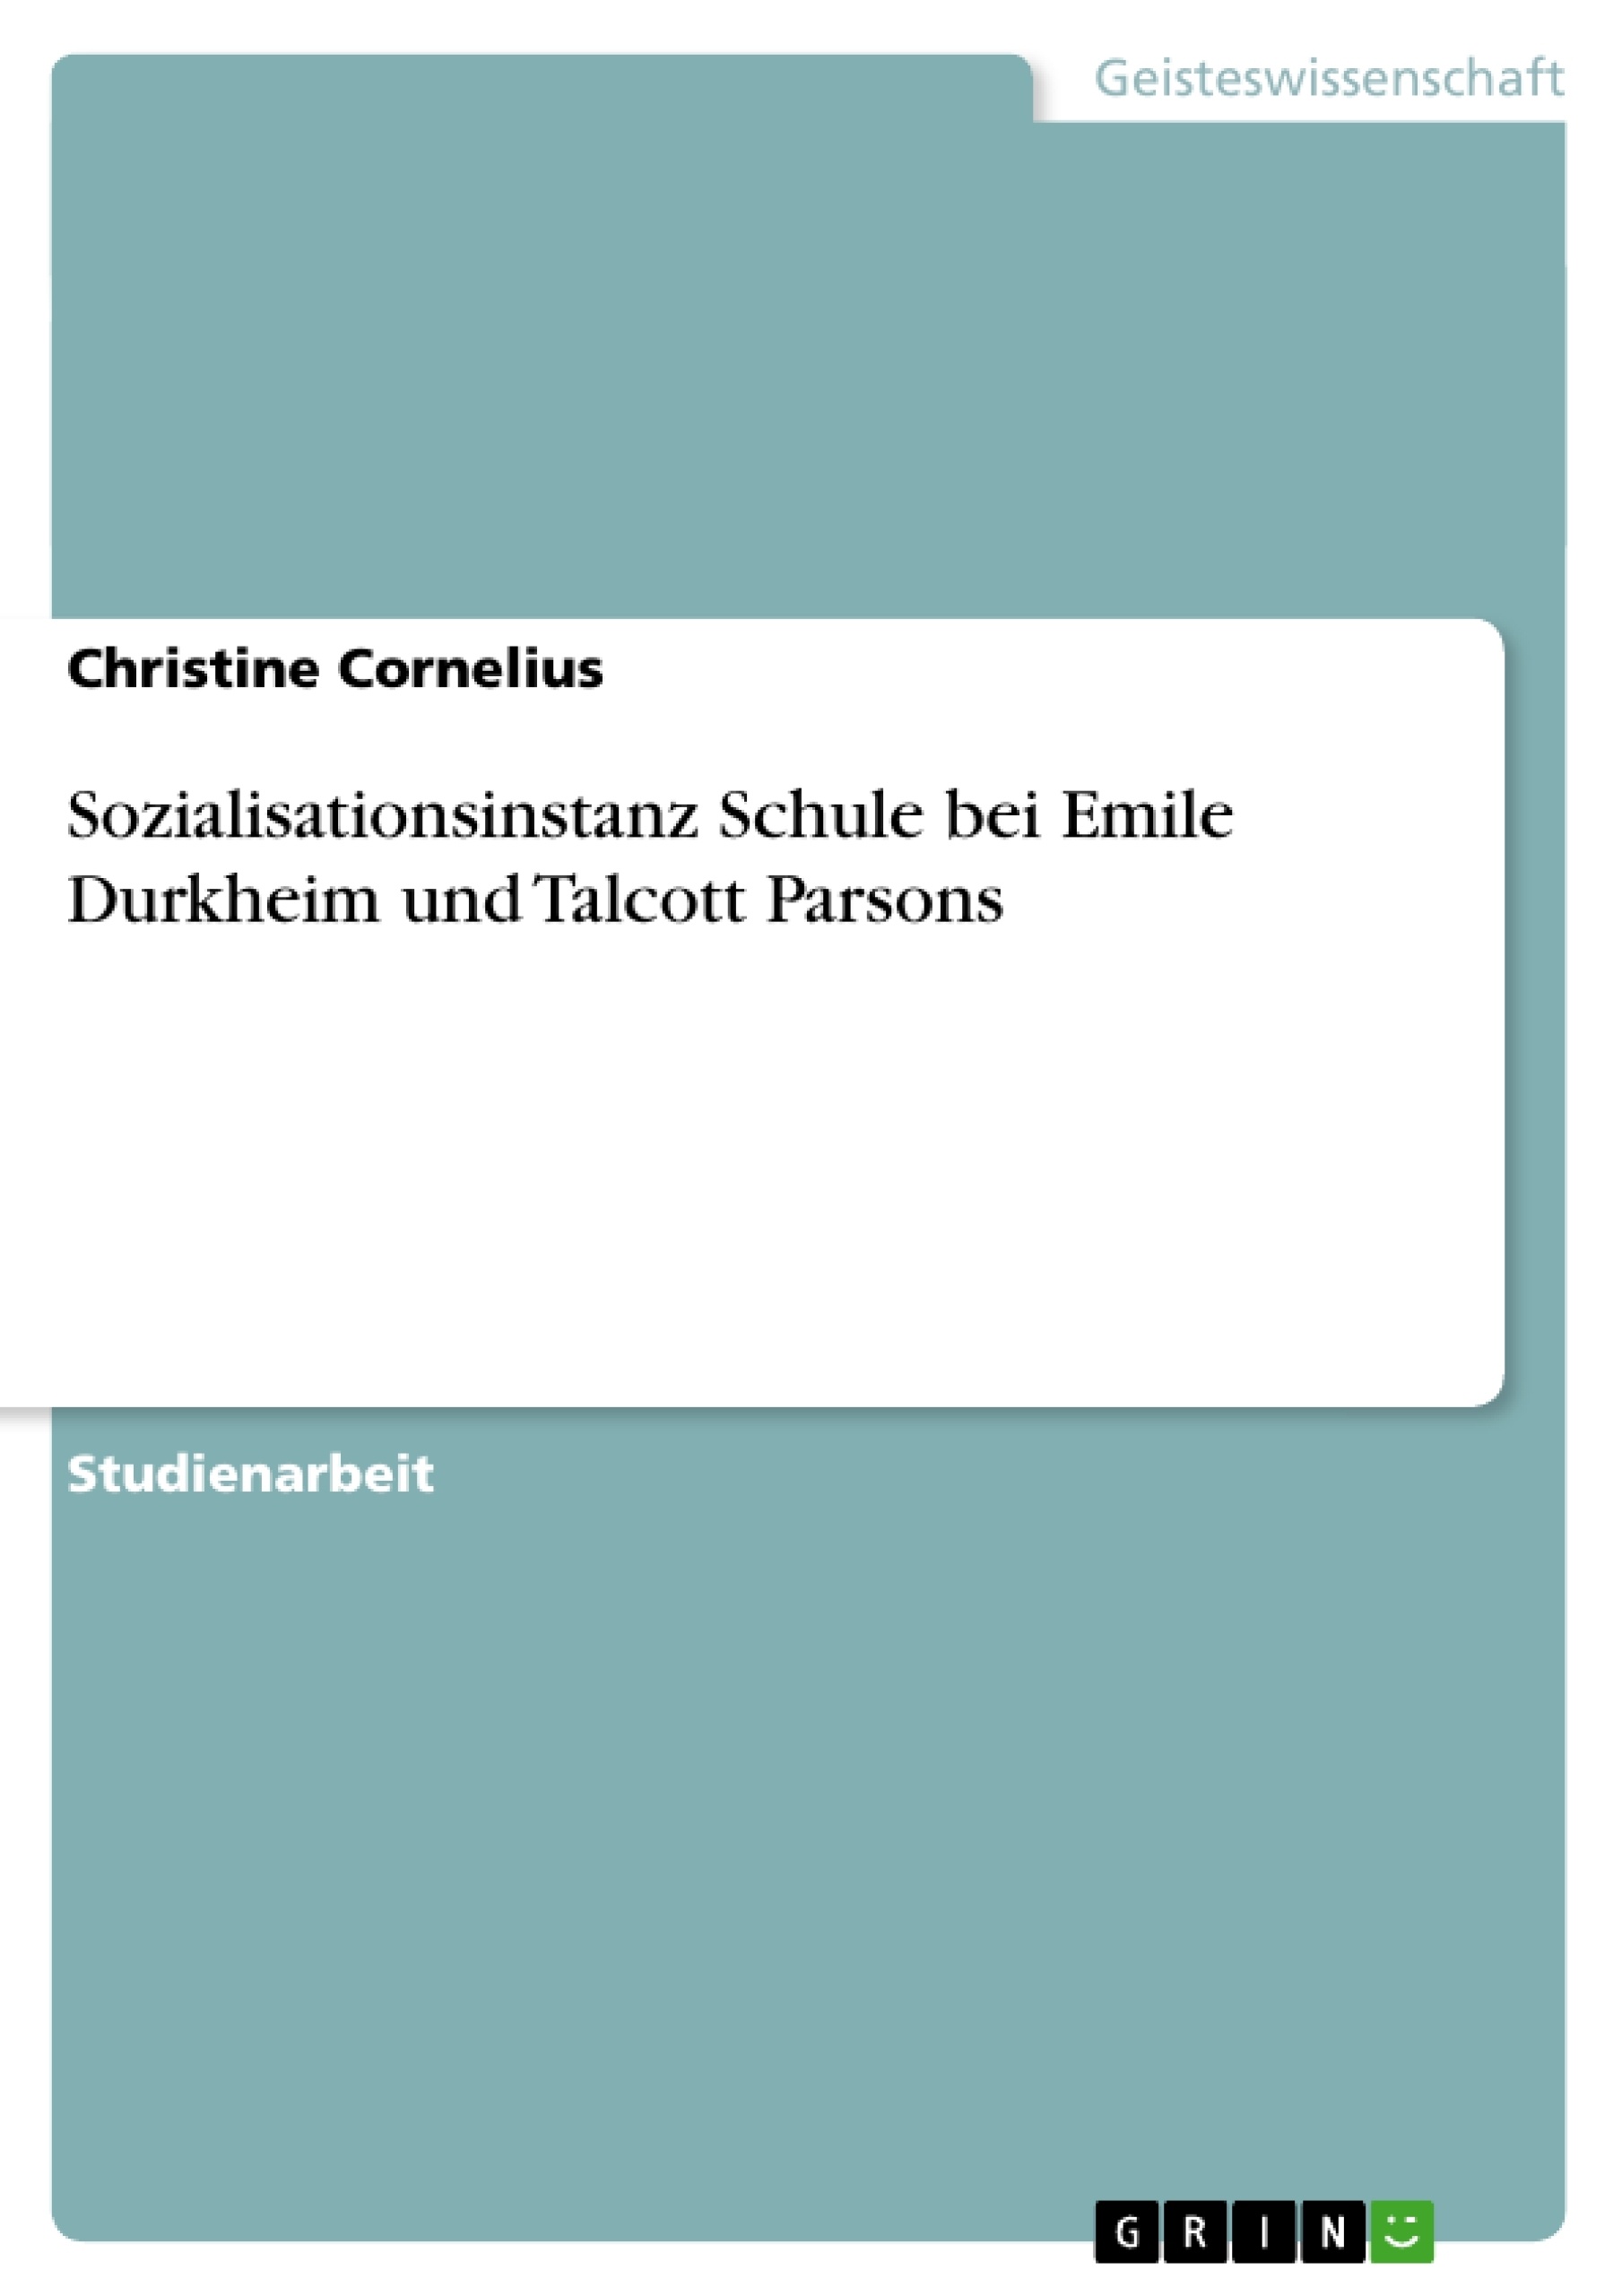 Título: Sozialisationsinstanz Schule bei Emile Durkheim und Talcott Parsons